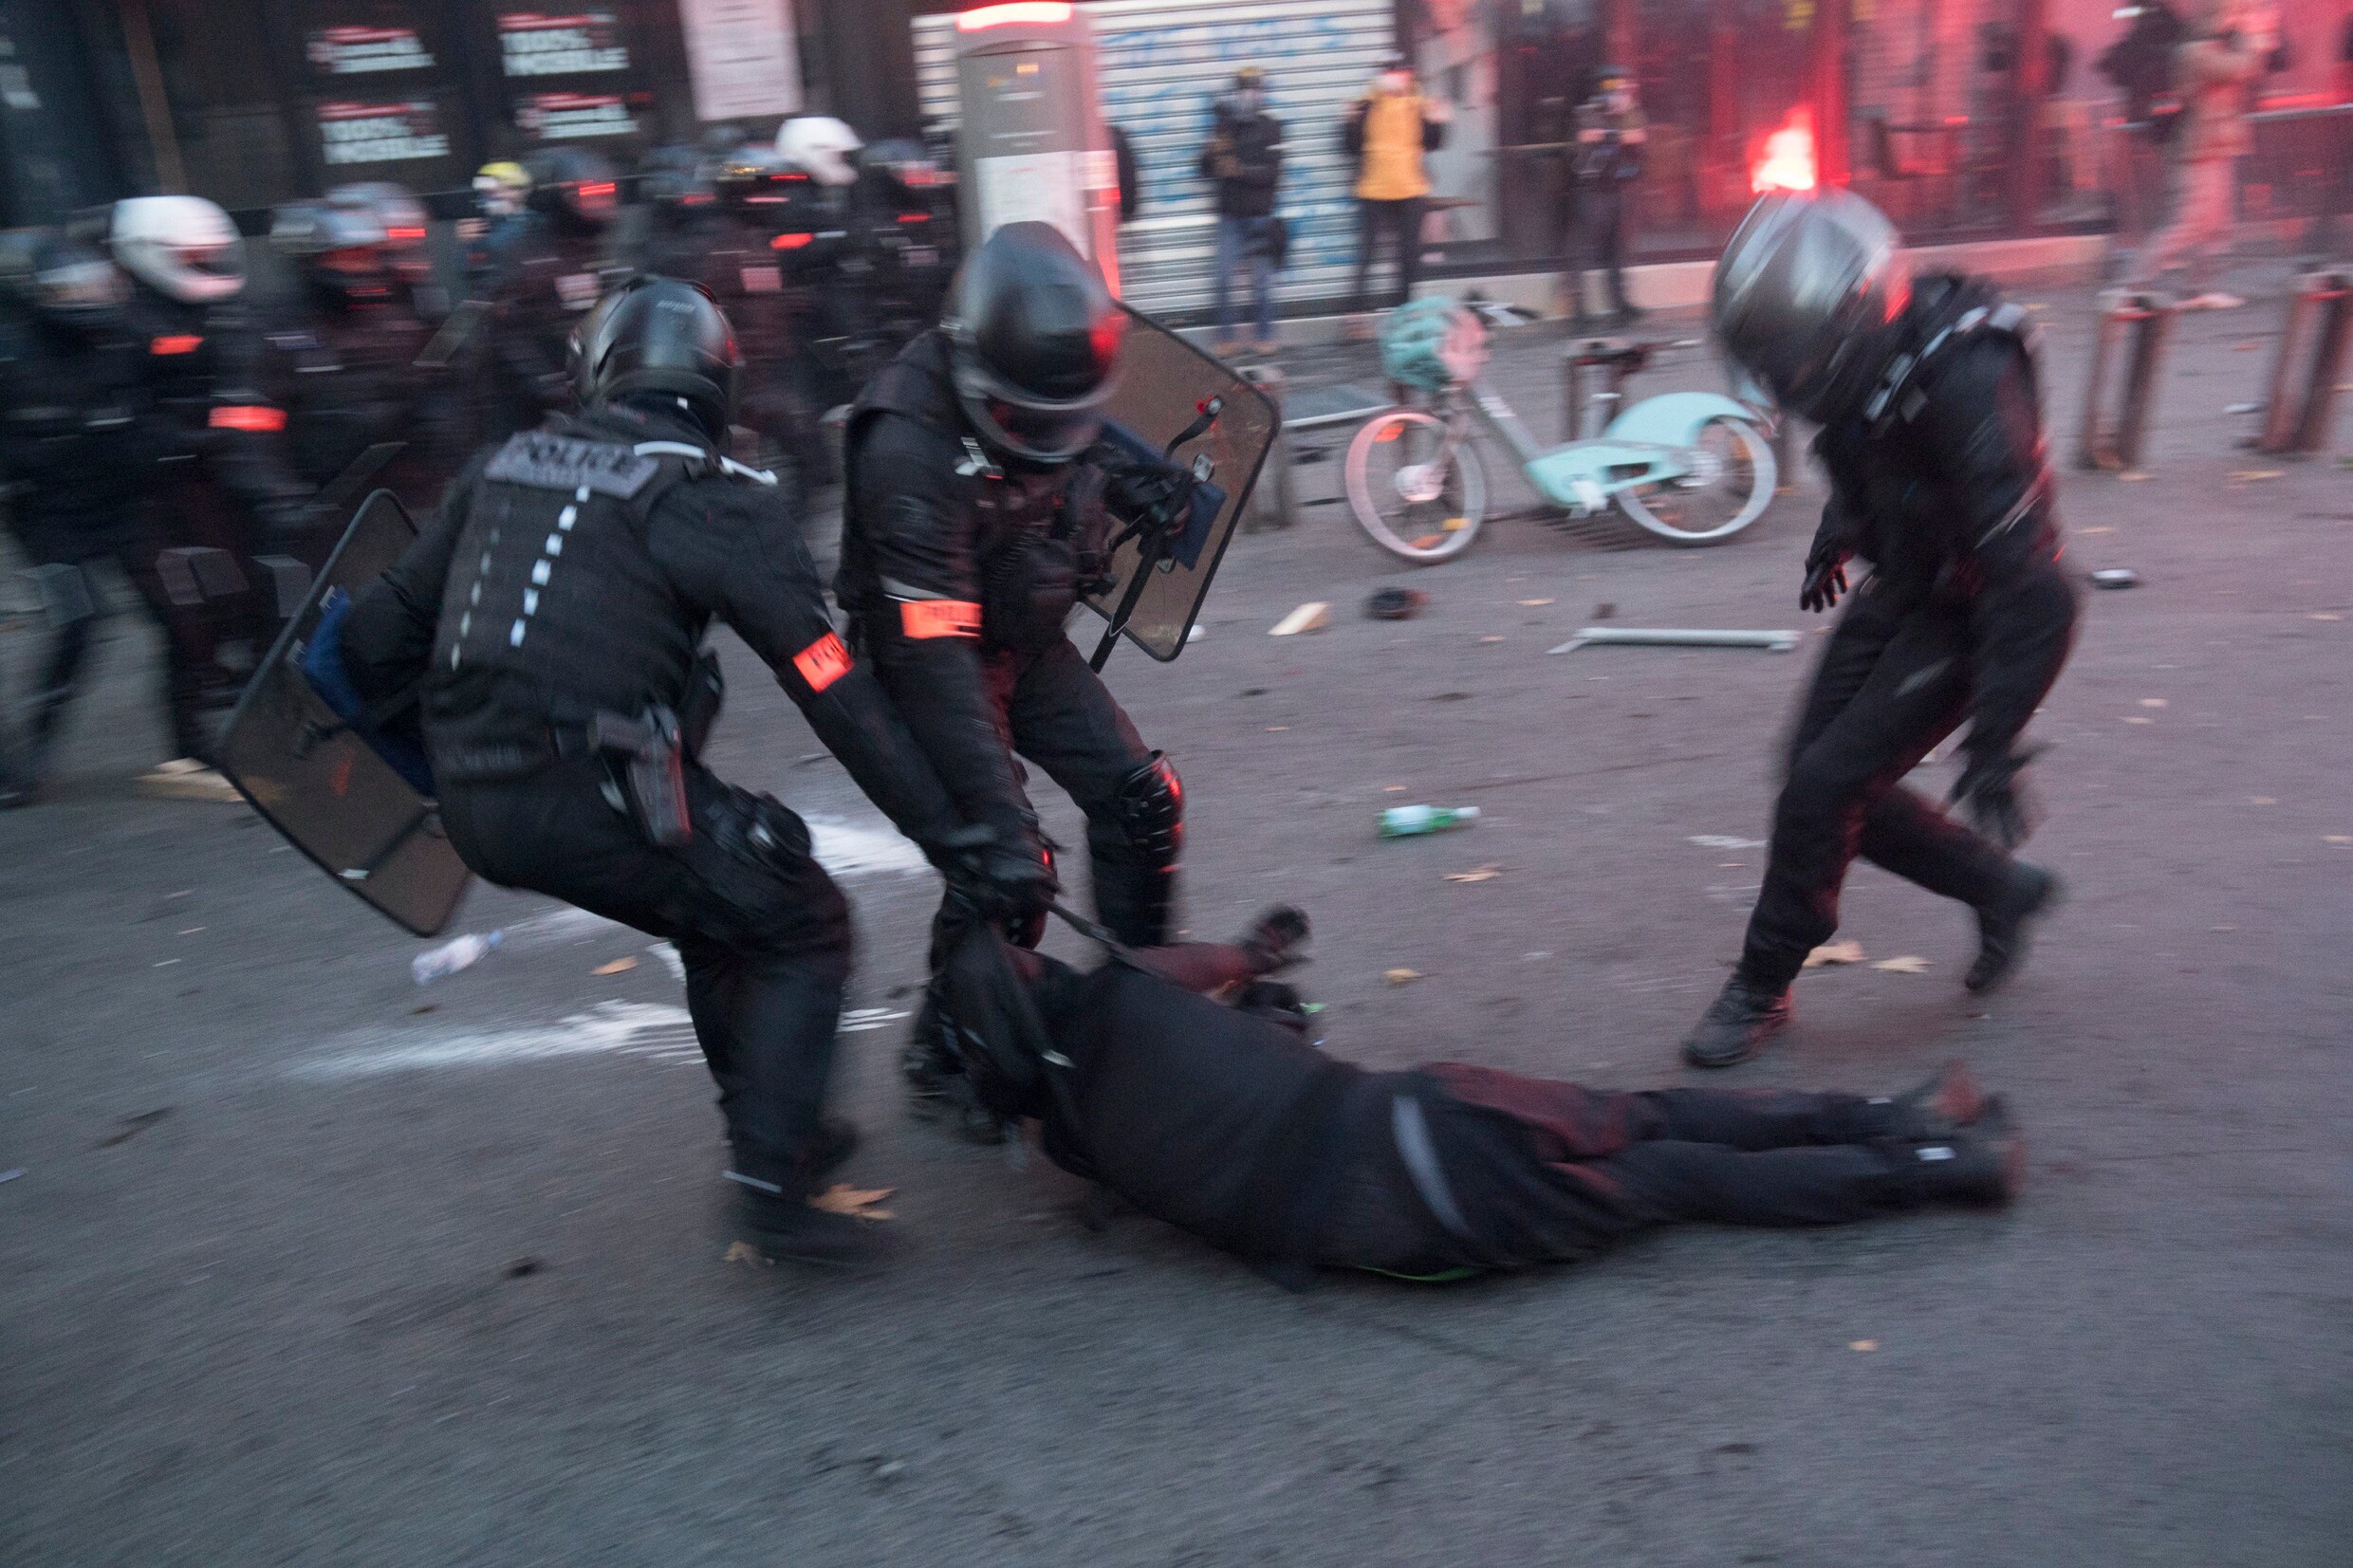 Betoging tegen politiegeweld ontspoort in Frankrijk: meer dan zestig agenten gewond